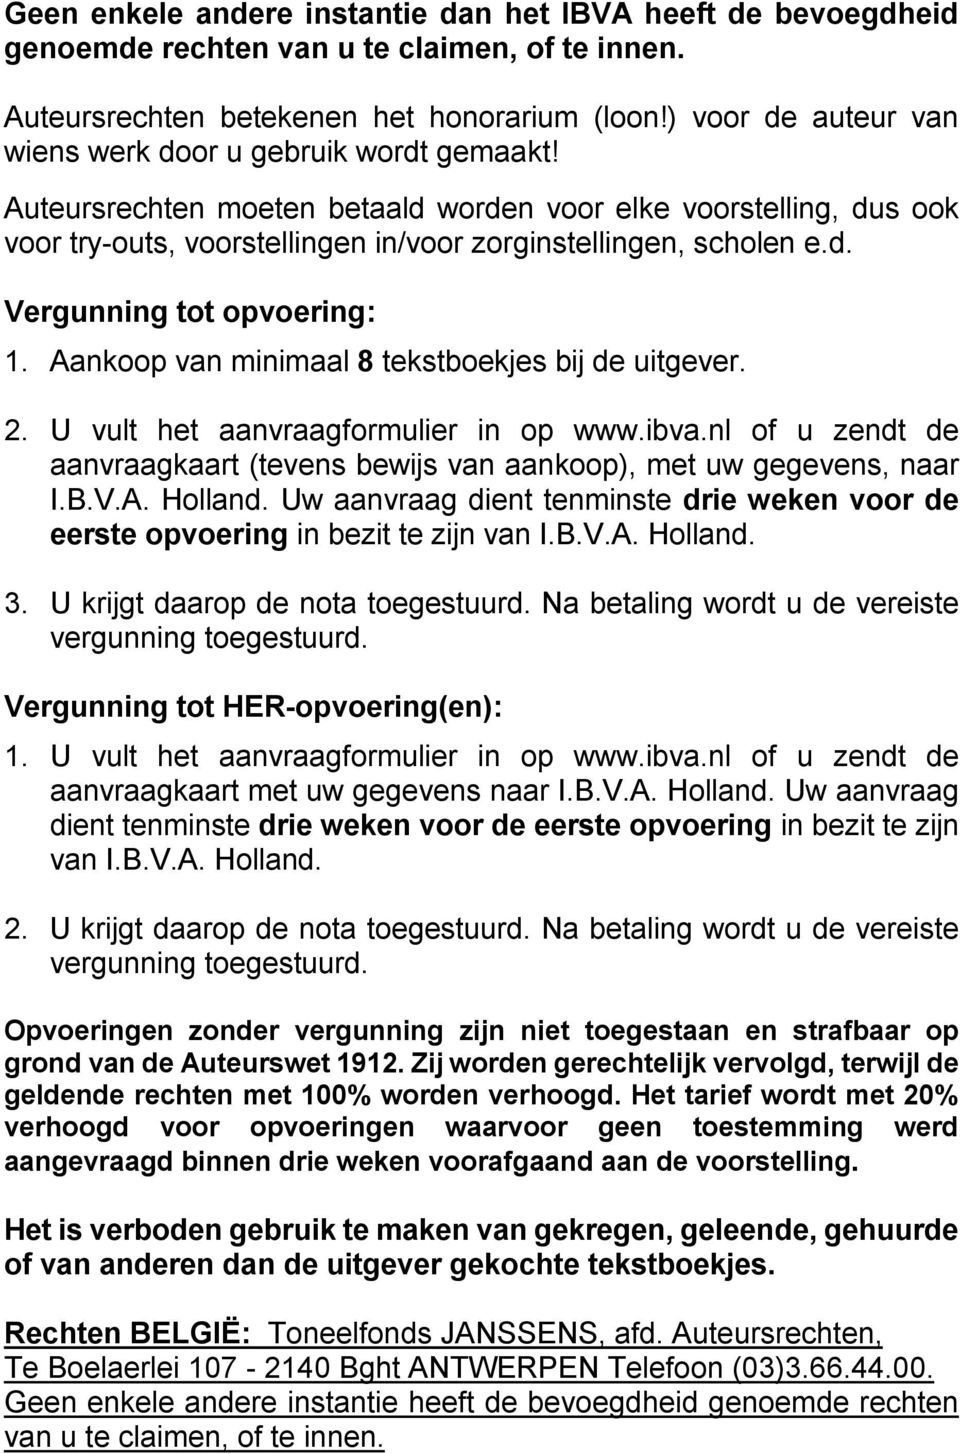 Aankoop van minimaal 8 tekstboekjes bij de uitgever. 2. U vult het aanvraagformulier in op www.ibva.nl of u zendt de aanvraagkaart (tevens bewijs van aankoop), met uw gegevens, naar I.B.V.A. Holland.